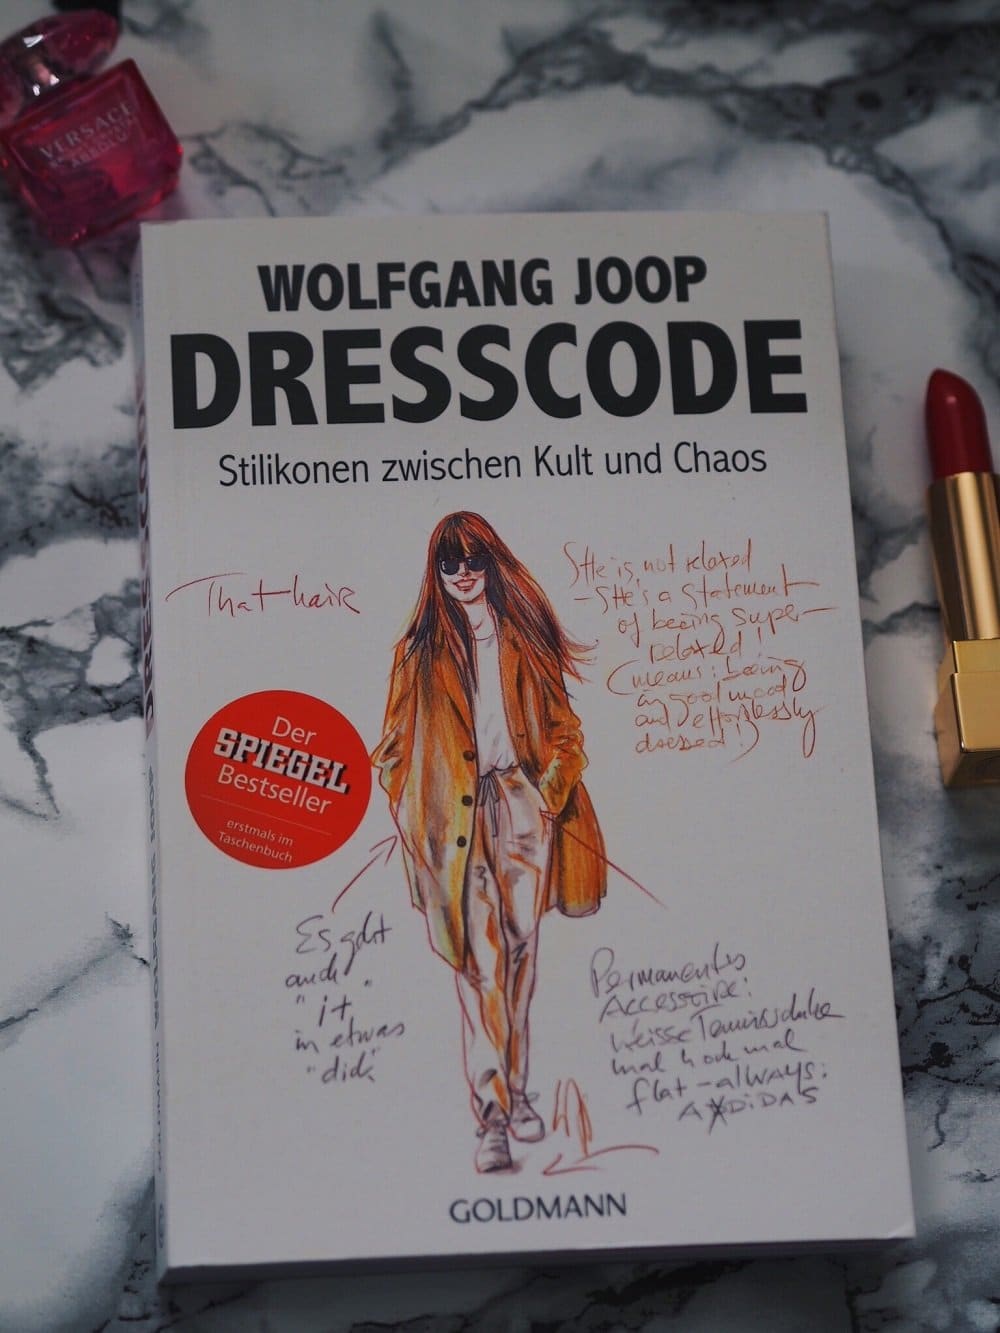 Heute rezensiere ich zwei interessante Bücher von Wolfgang Joop und Sofie Valkiers in meinem Blog-Dresscode und The Little Black Book für Fashionblogger 